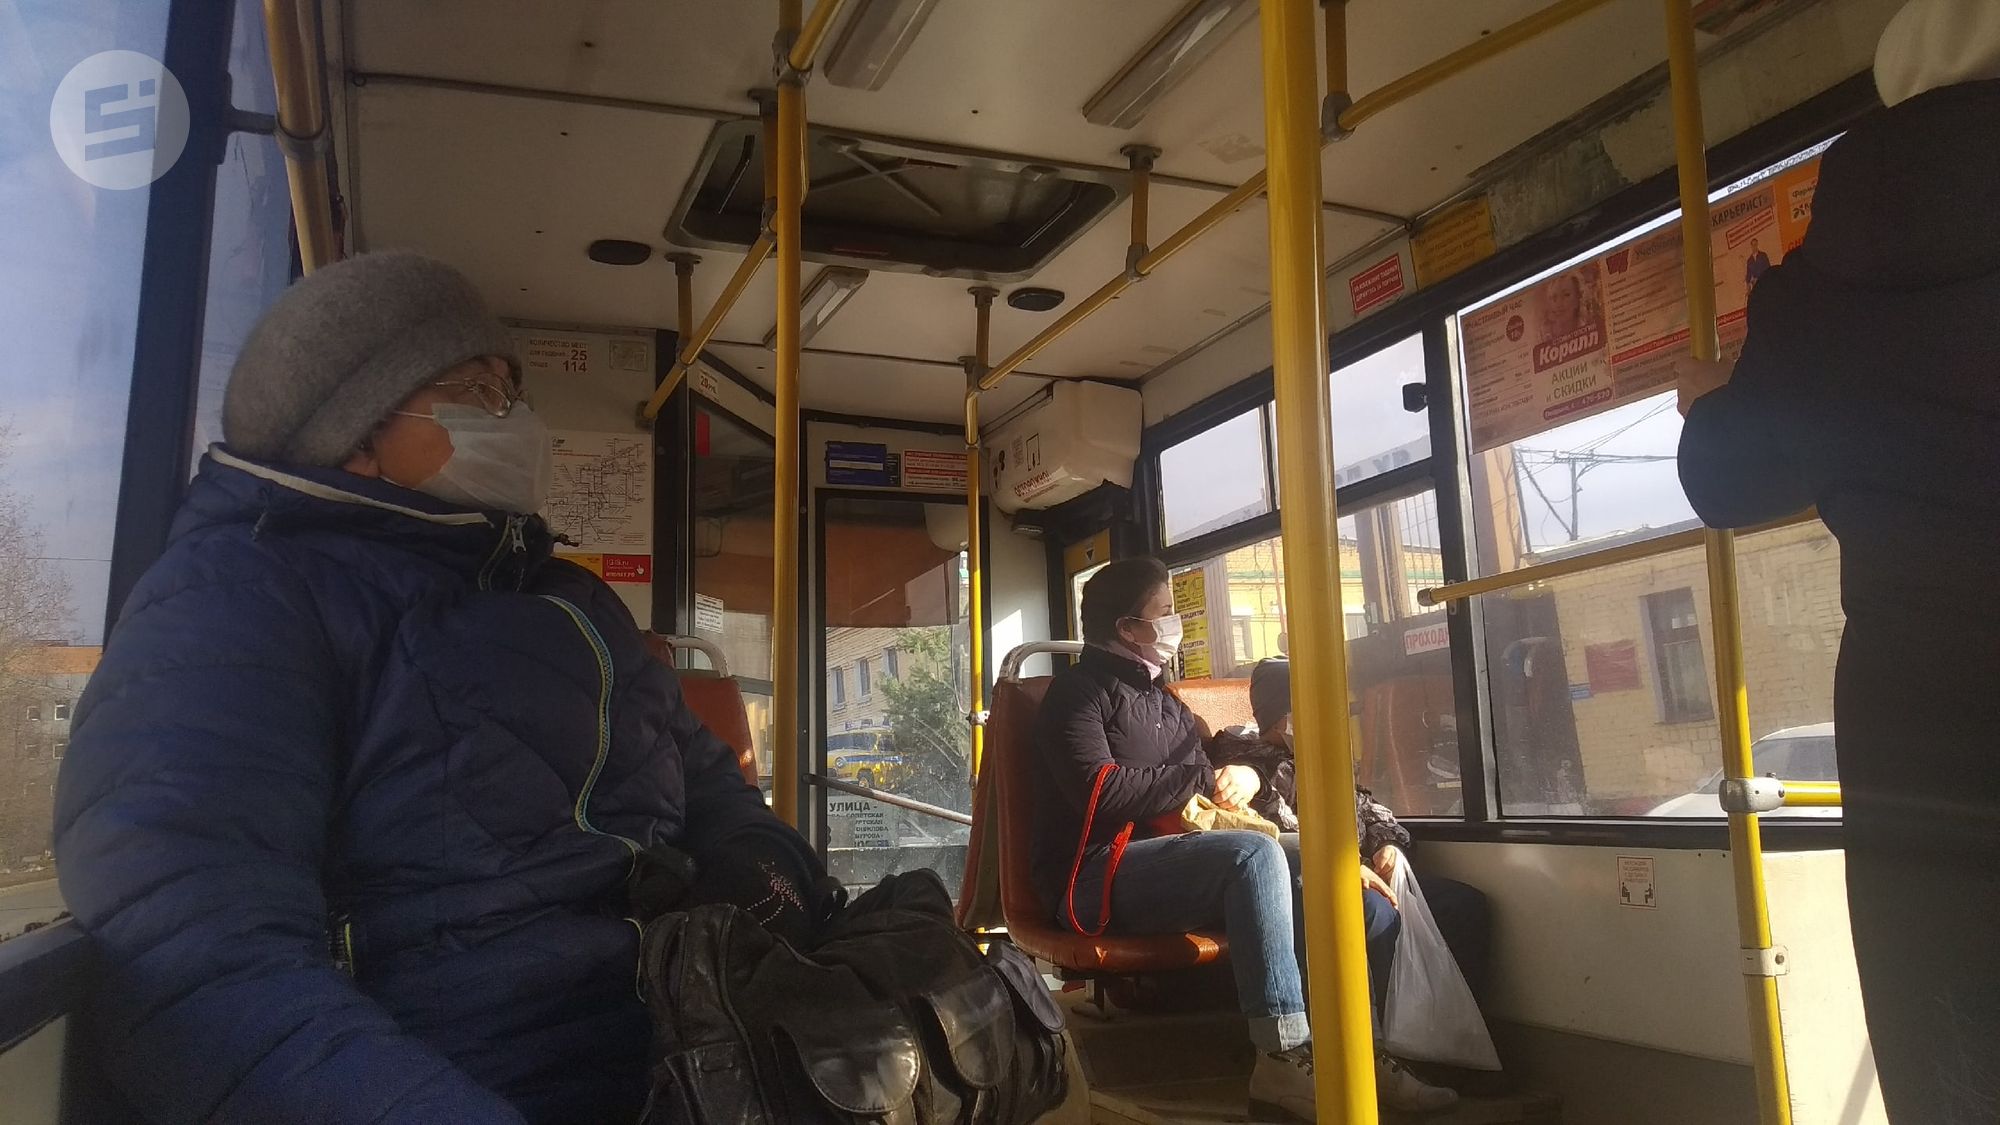 

В общественном транспорте Ижевска нашли нарушения ковид-безопасности

